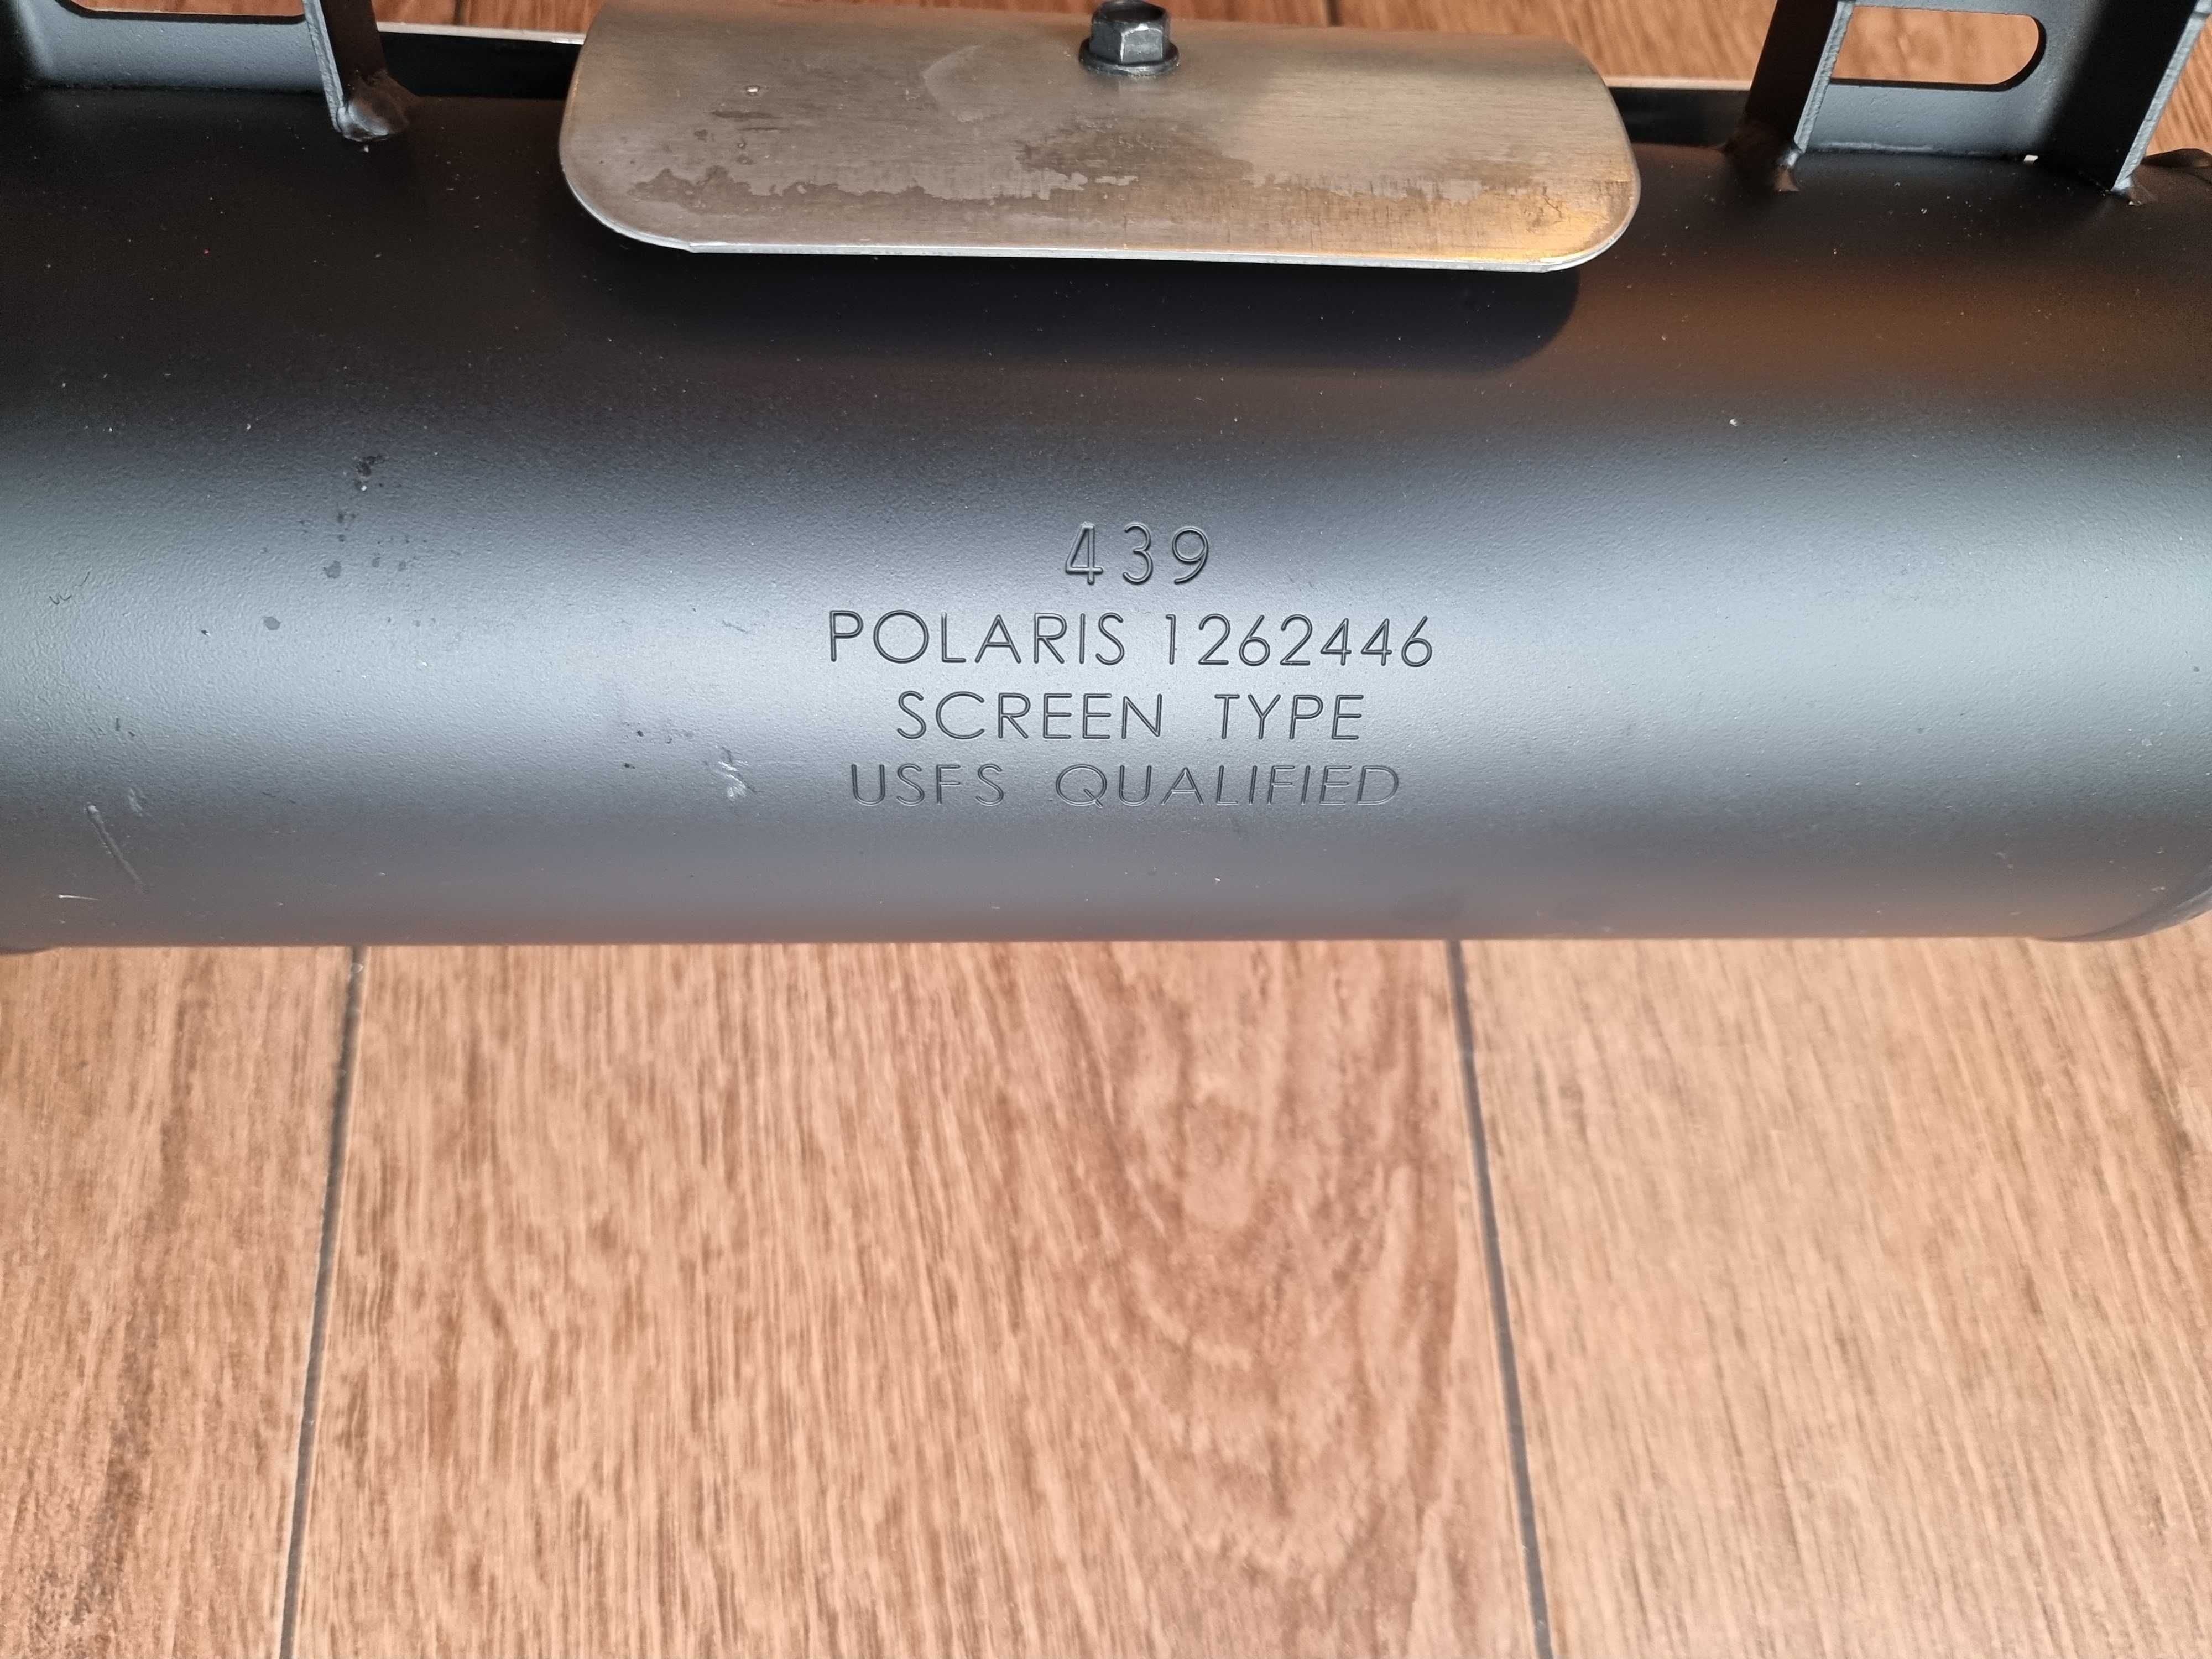 Polaris Ranger 570 - Wydech / Tłumik - nowy kompletny - oryginał